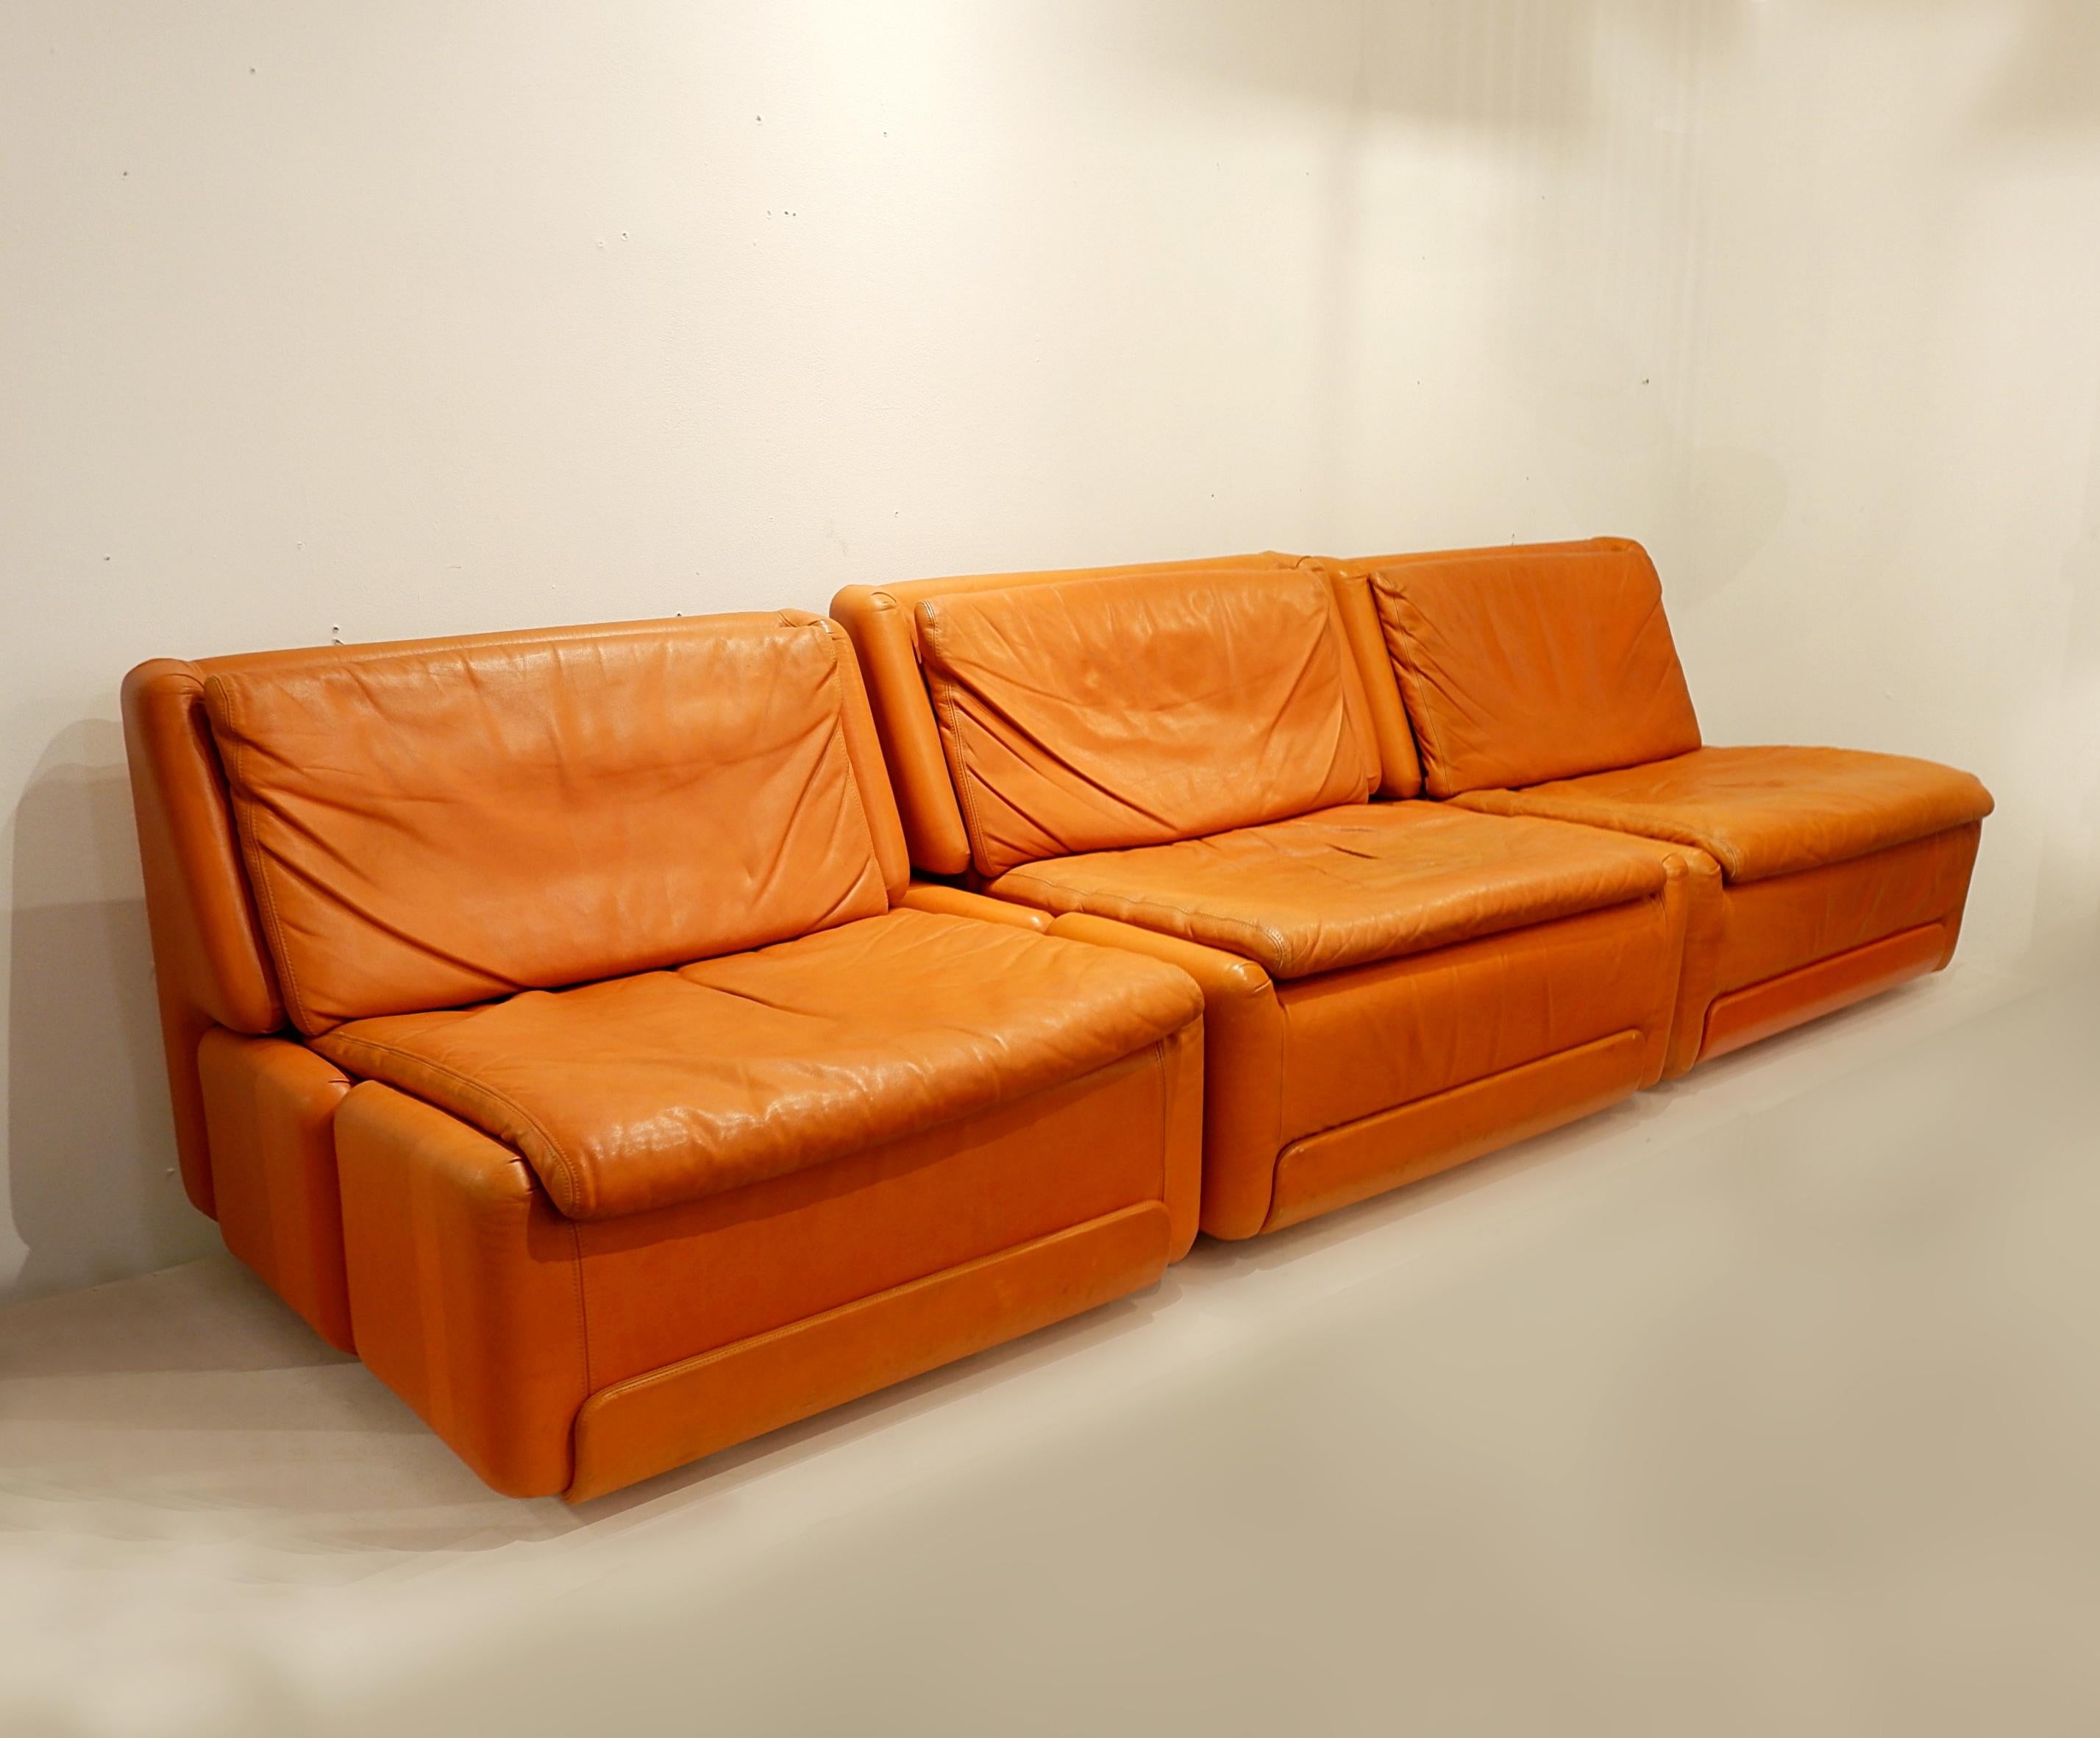 Bequeme und gut gestaltete Sessel aus orangefarbenem Leder. Diese Sessel haben eine angenehme Patina und eine einfache Form für die meisten Innenräume. Sie können einen Farbakzent setzen oder einen bereits farbenfrohen Bereich ergänzen. Es sind fünf